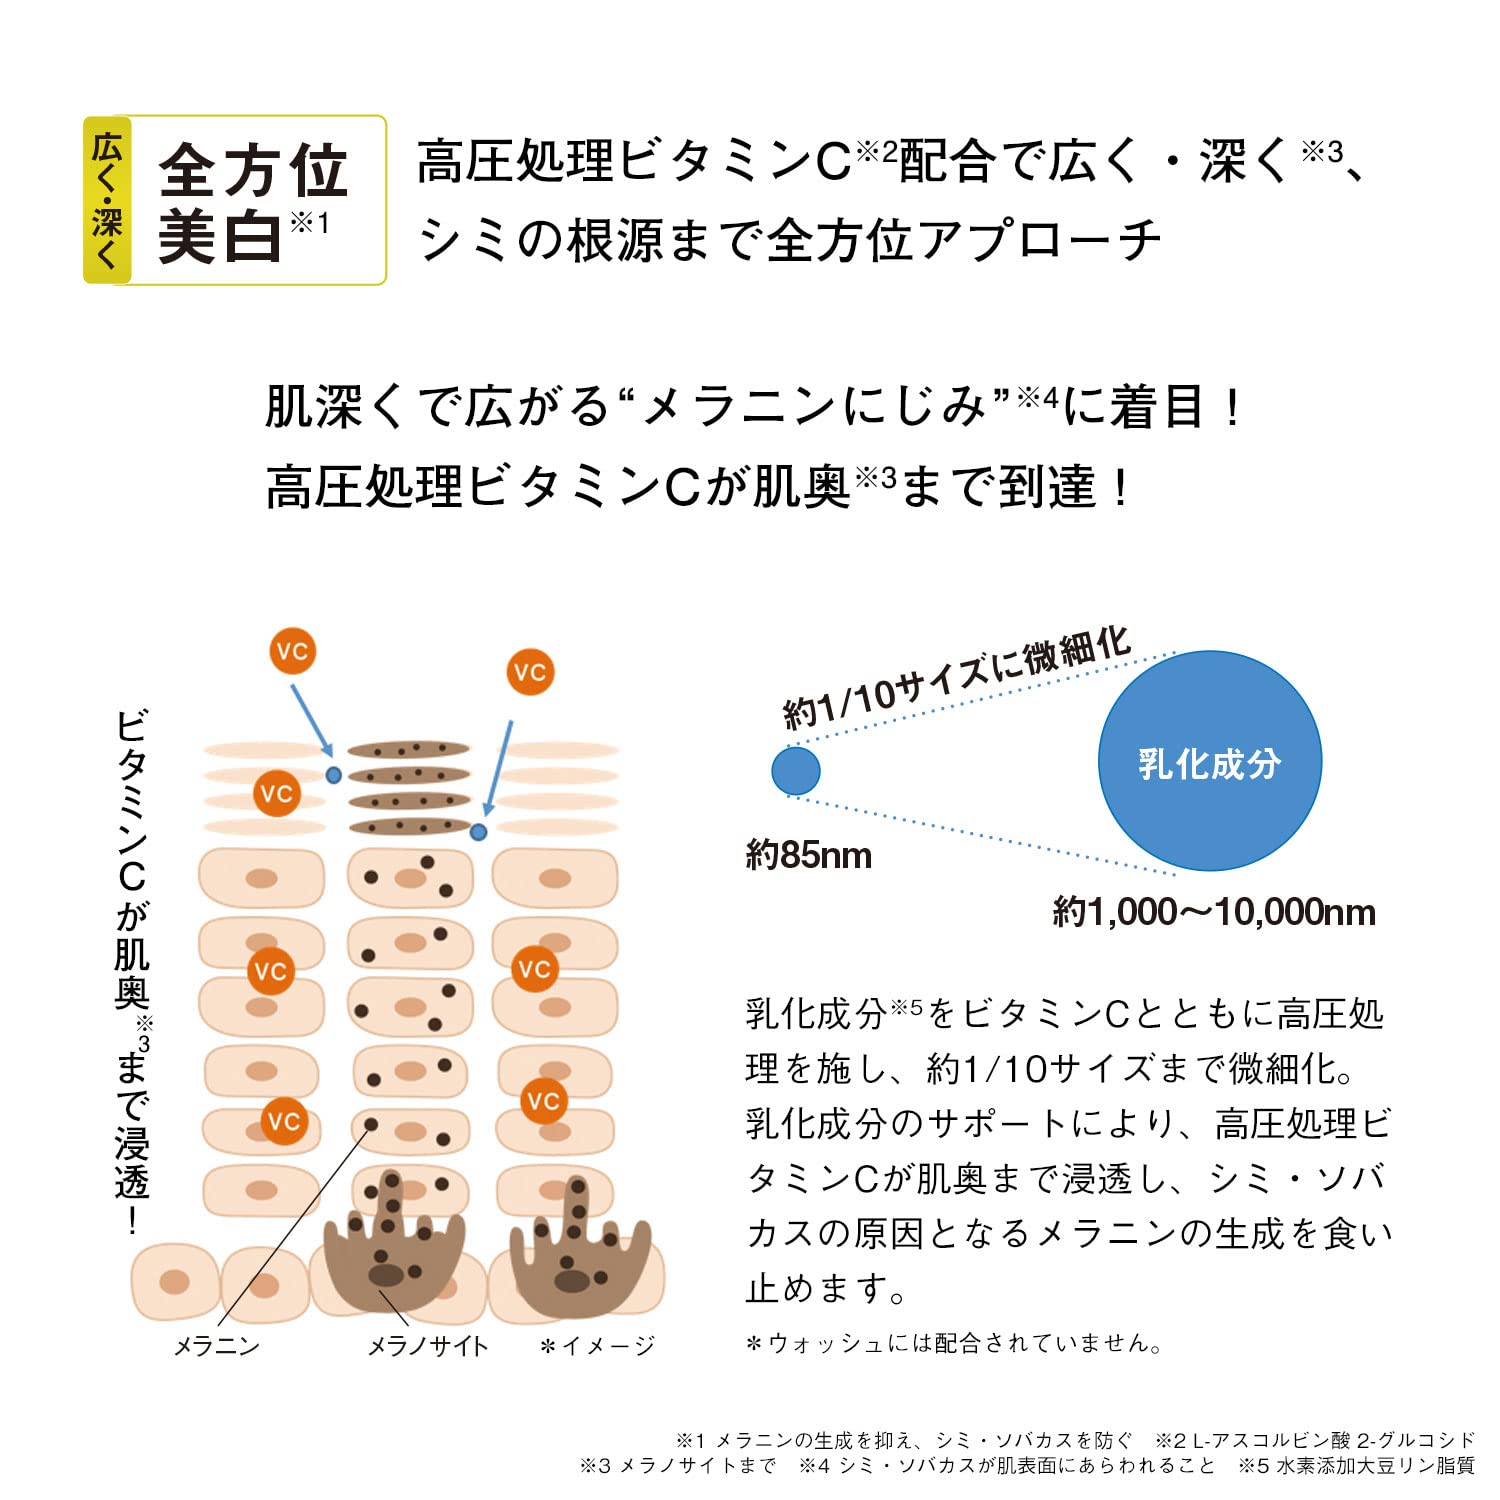 Cezanne Lip Color Shield 02 Orange Beige 3.7G - YOYO JAPAN